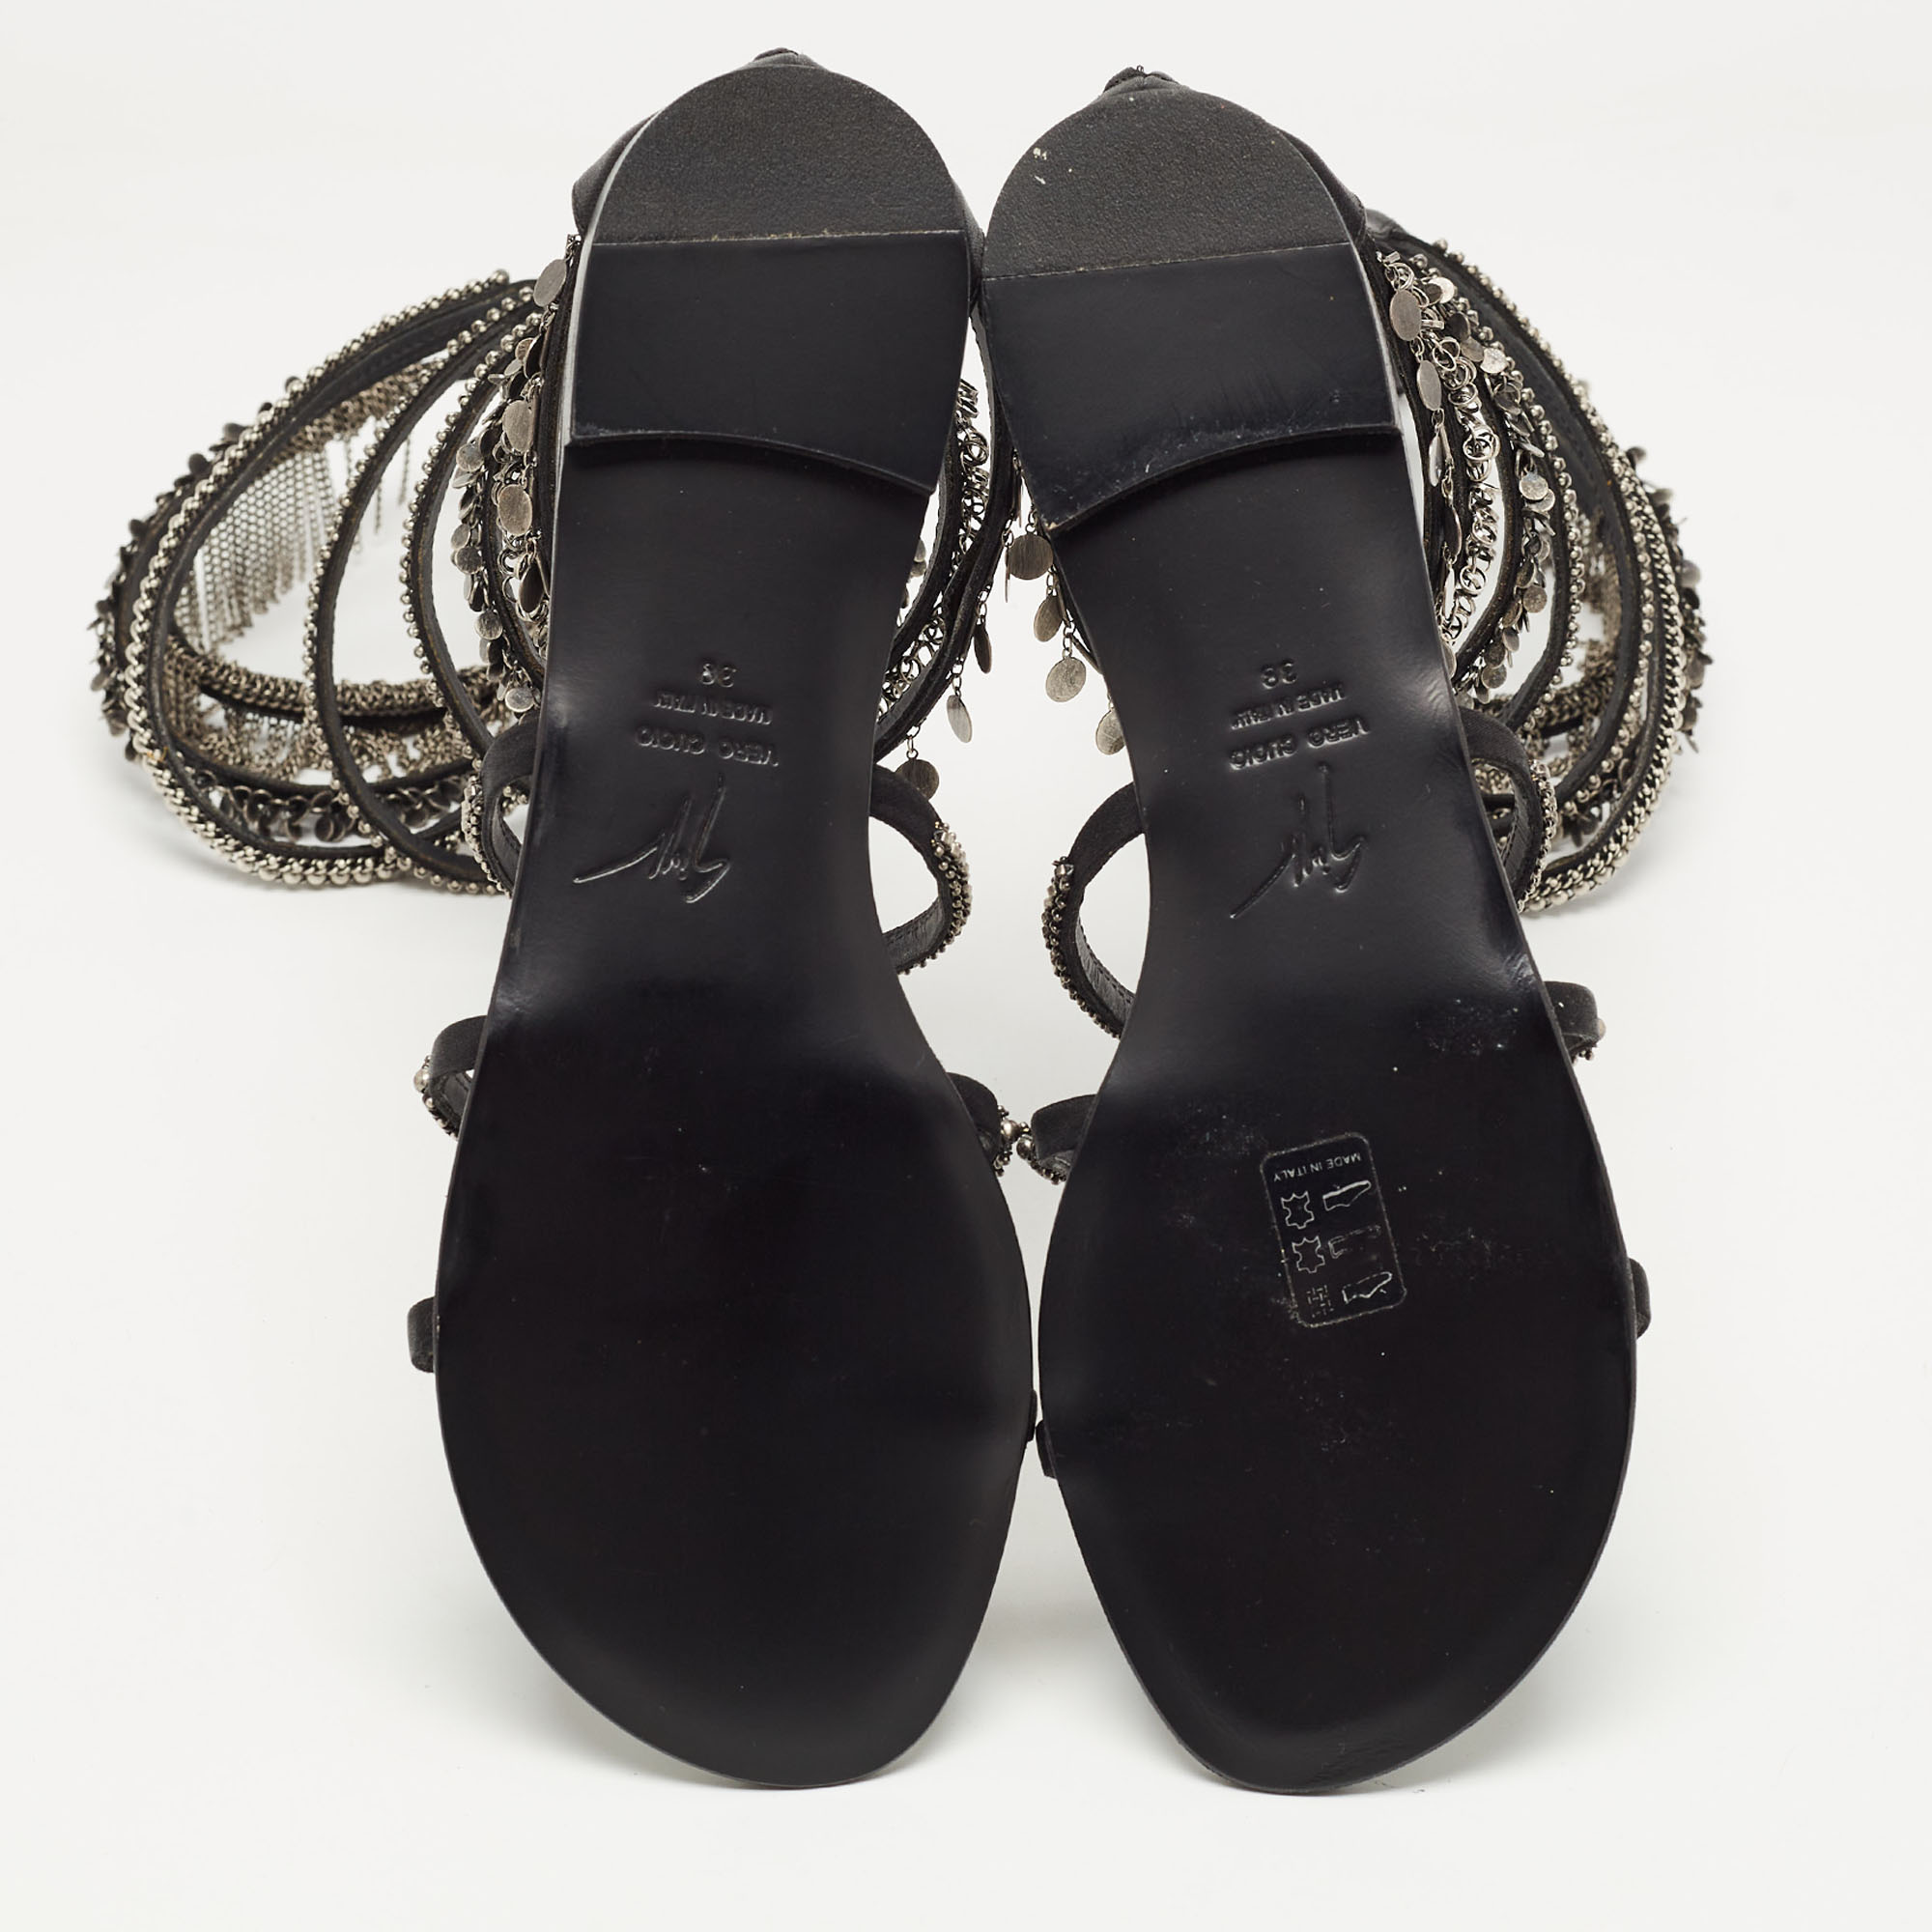 Giuseppe Zanotti Black Satin Embellished Gladiator Sandals Size 38